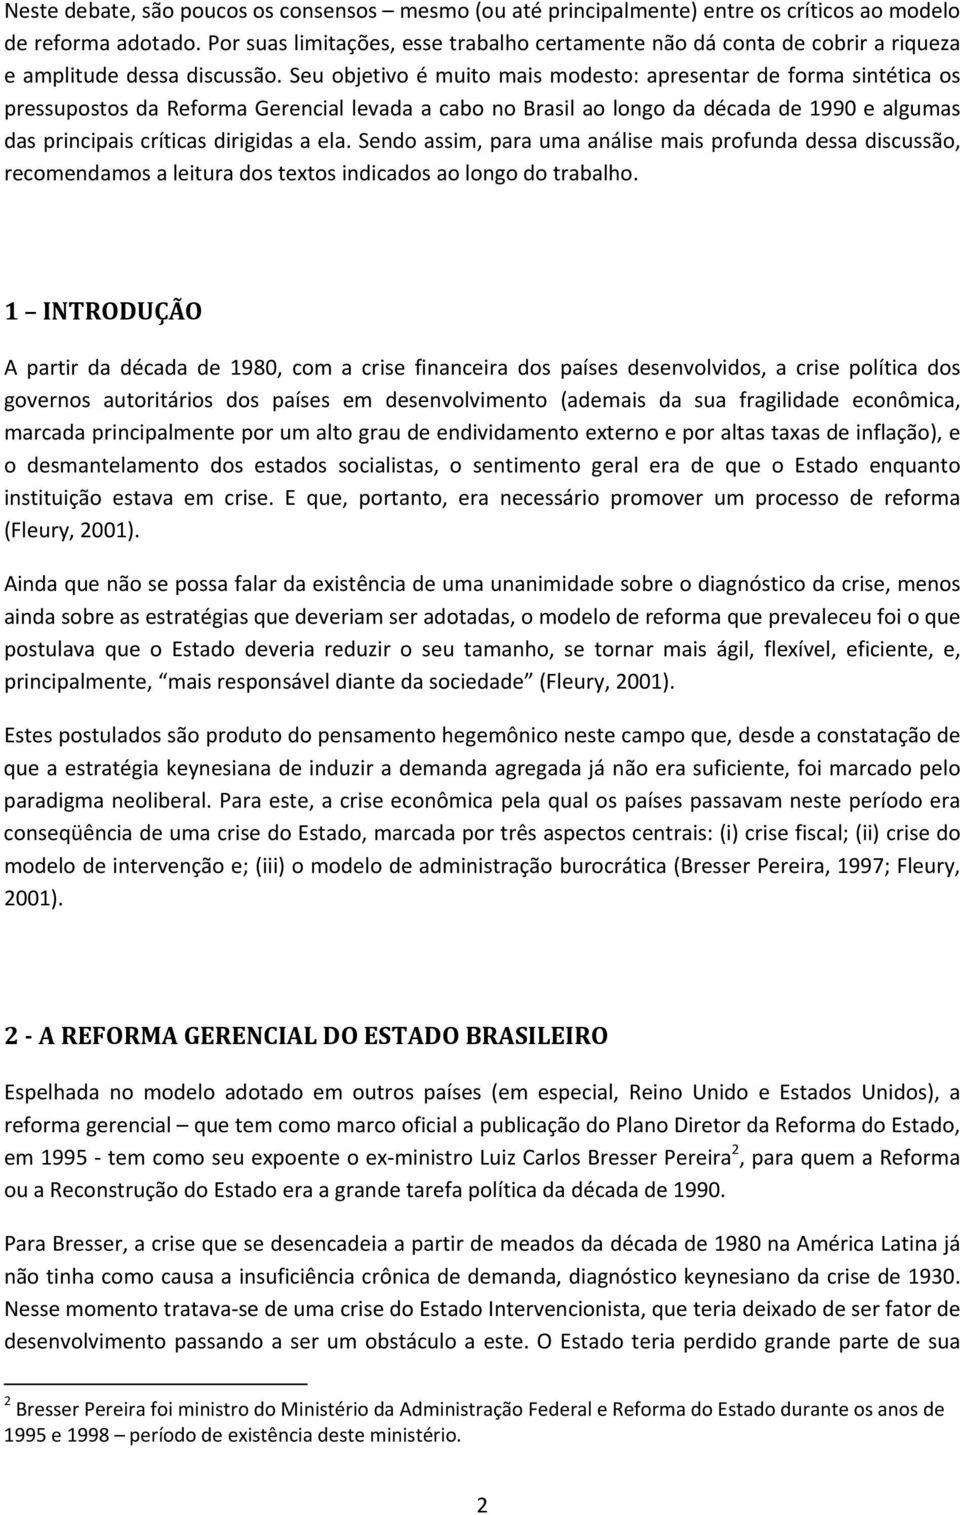 Seu objetivo é muito mais modesto: apresentar de forma sintética os pressupostos da Reforma Gerencial levada a cabo no Brasil ao longo da década de 1990 e algumas das principais críticas dirigidas a